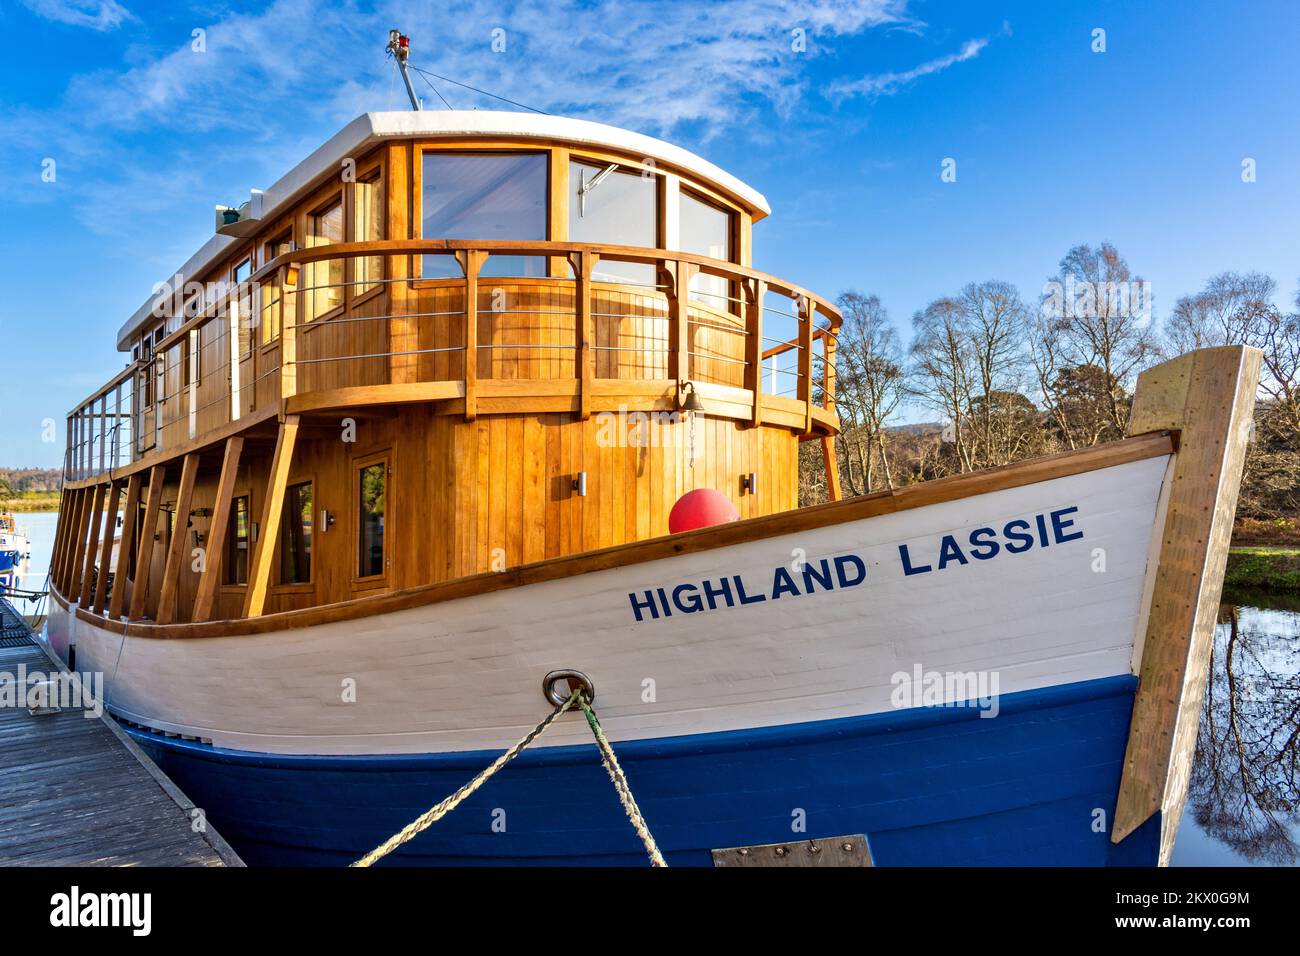 Caledonian Canal Dochgarroch Inverness hölzernes Restaurantboot Highland Lassie im Kanal verankert Stockfoto